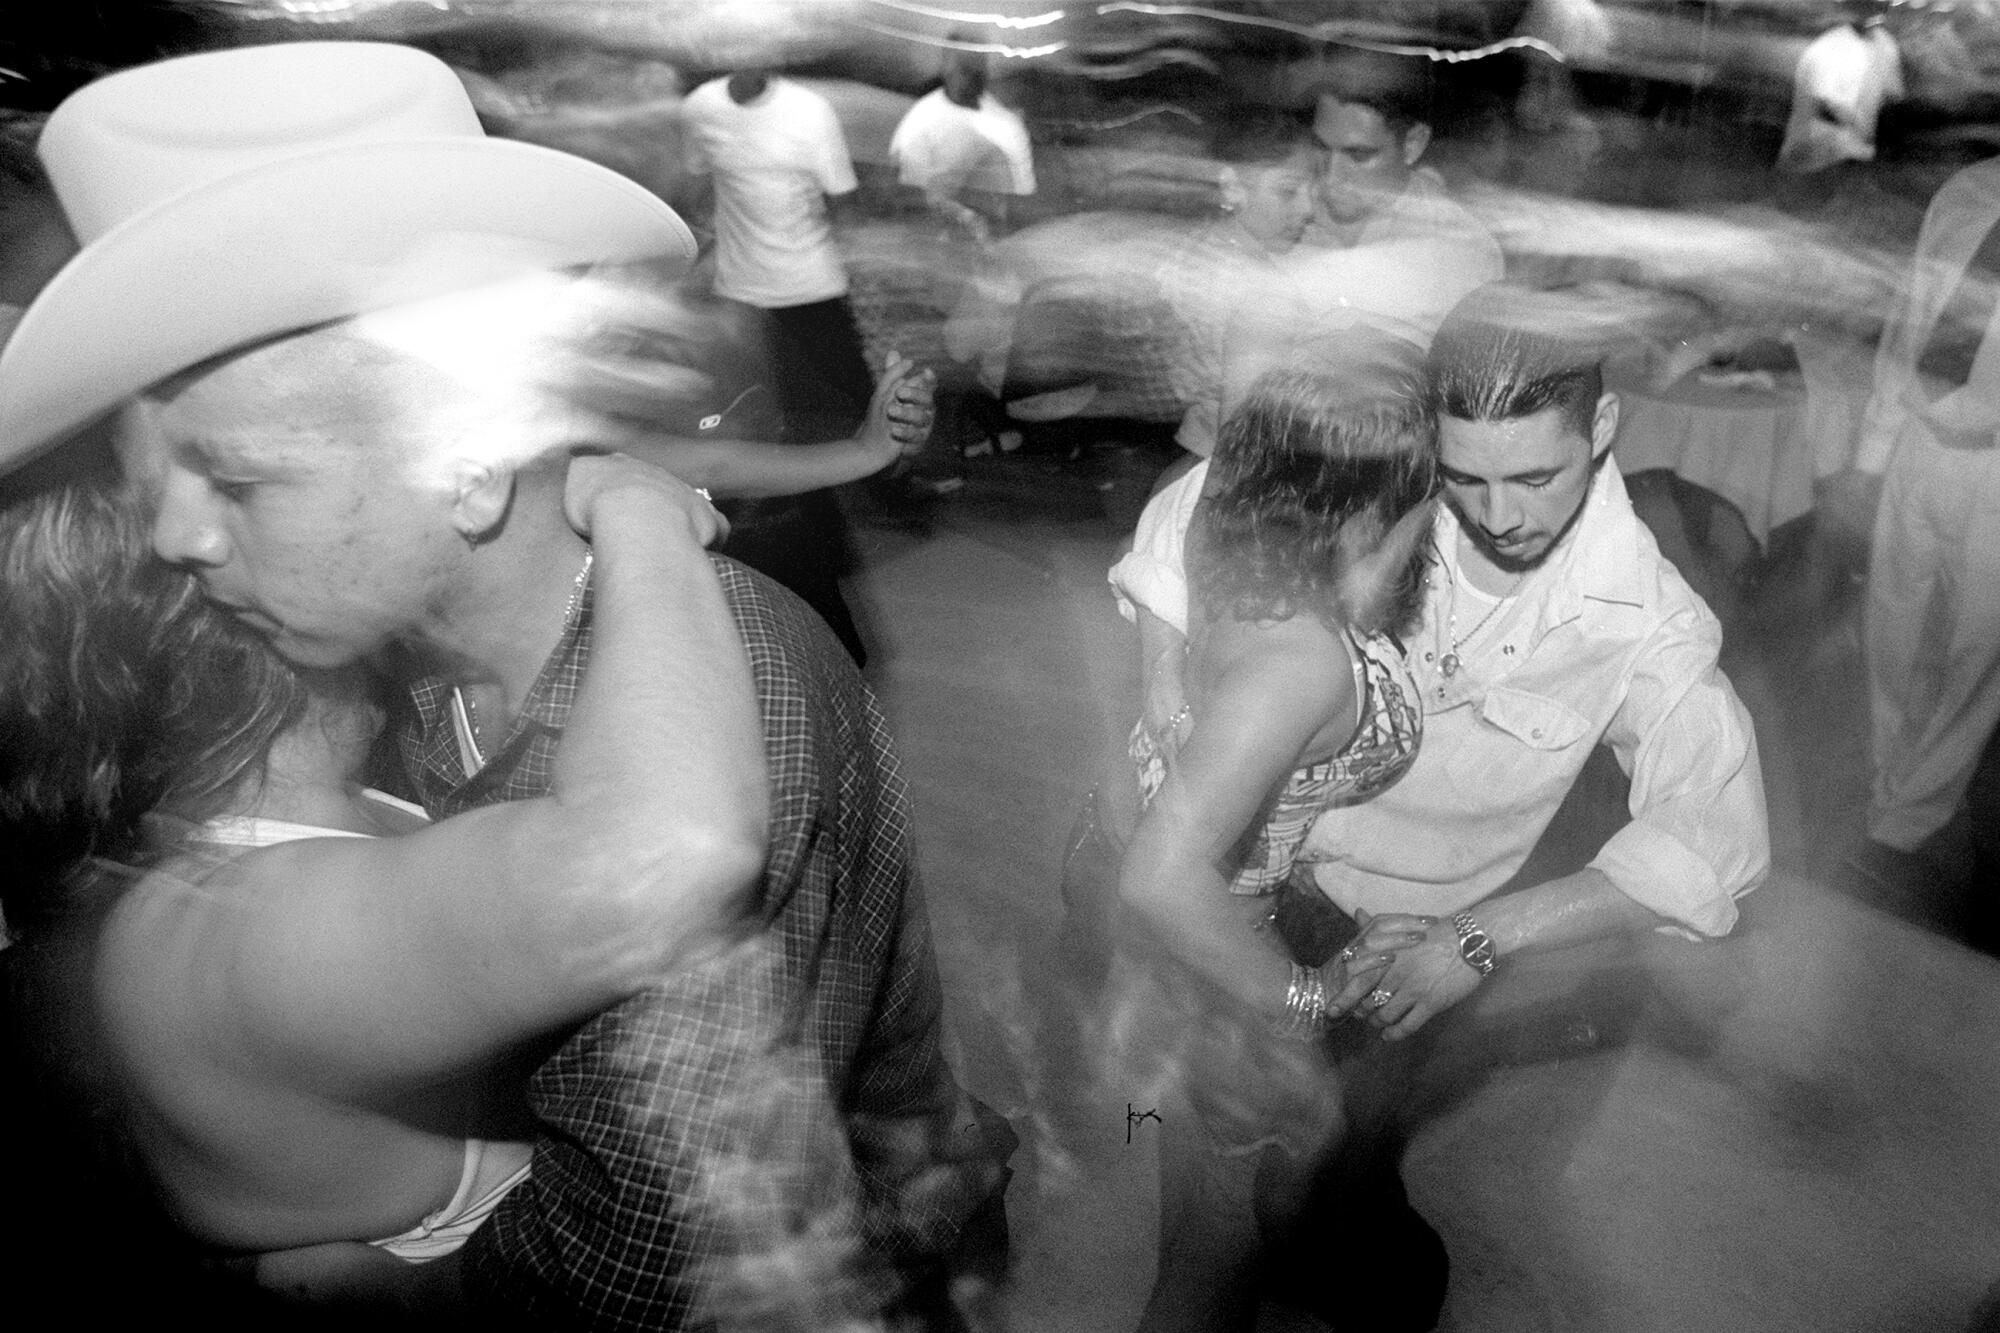 Las parejas bailan en la discoteca La Zona Rosa de la avenida César Chávez.